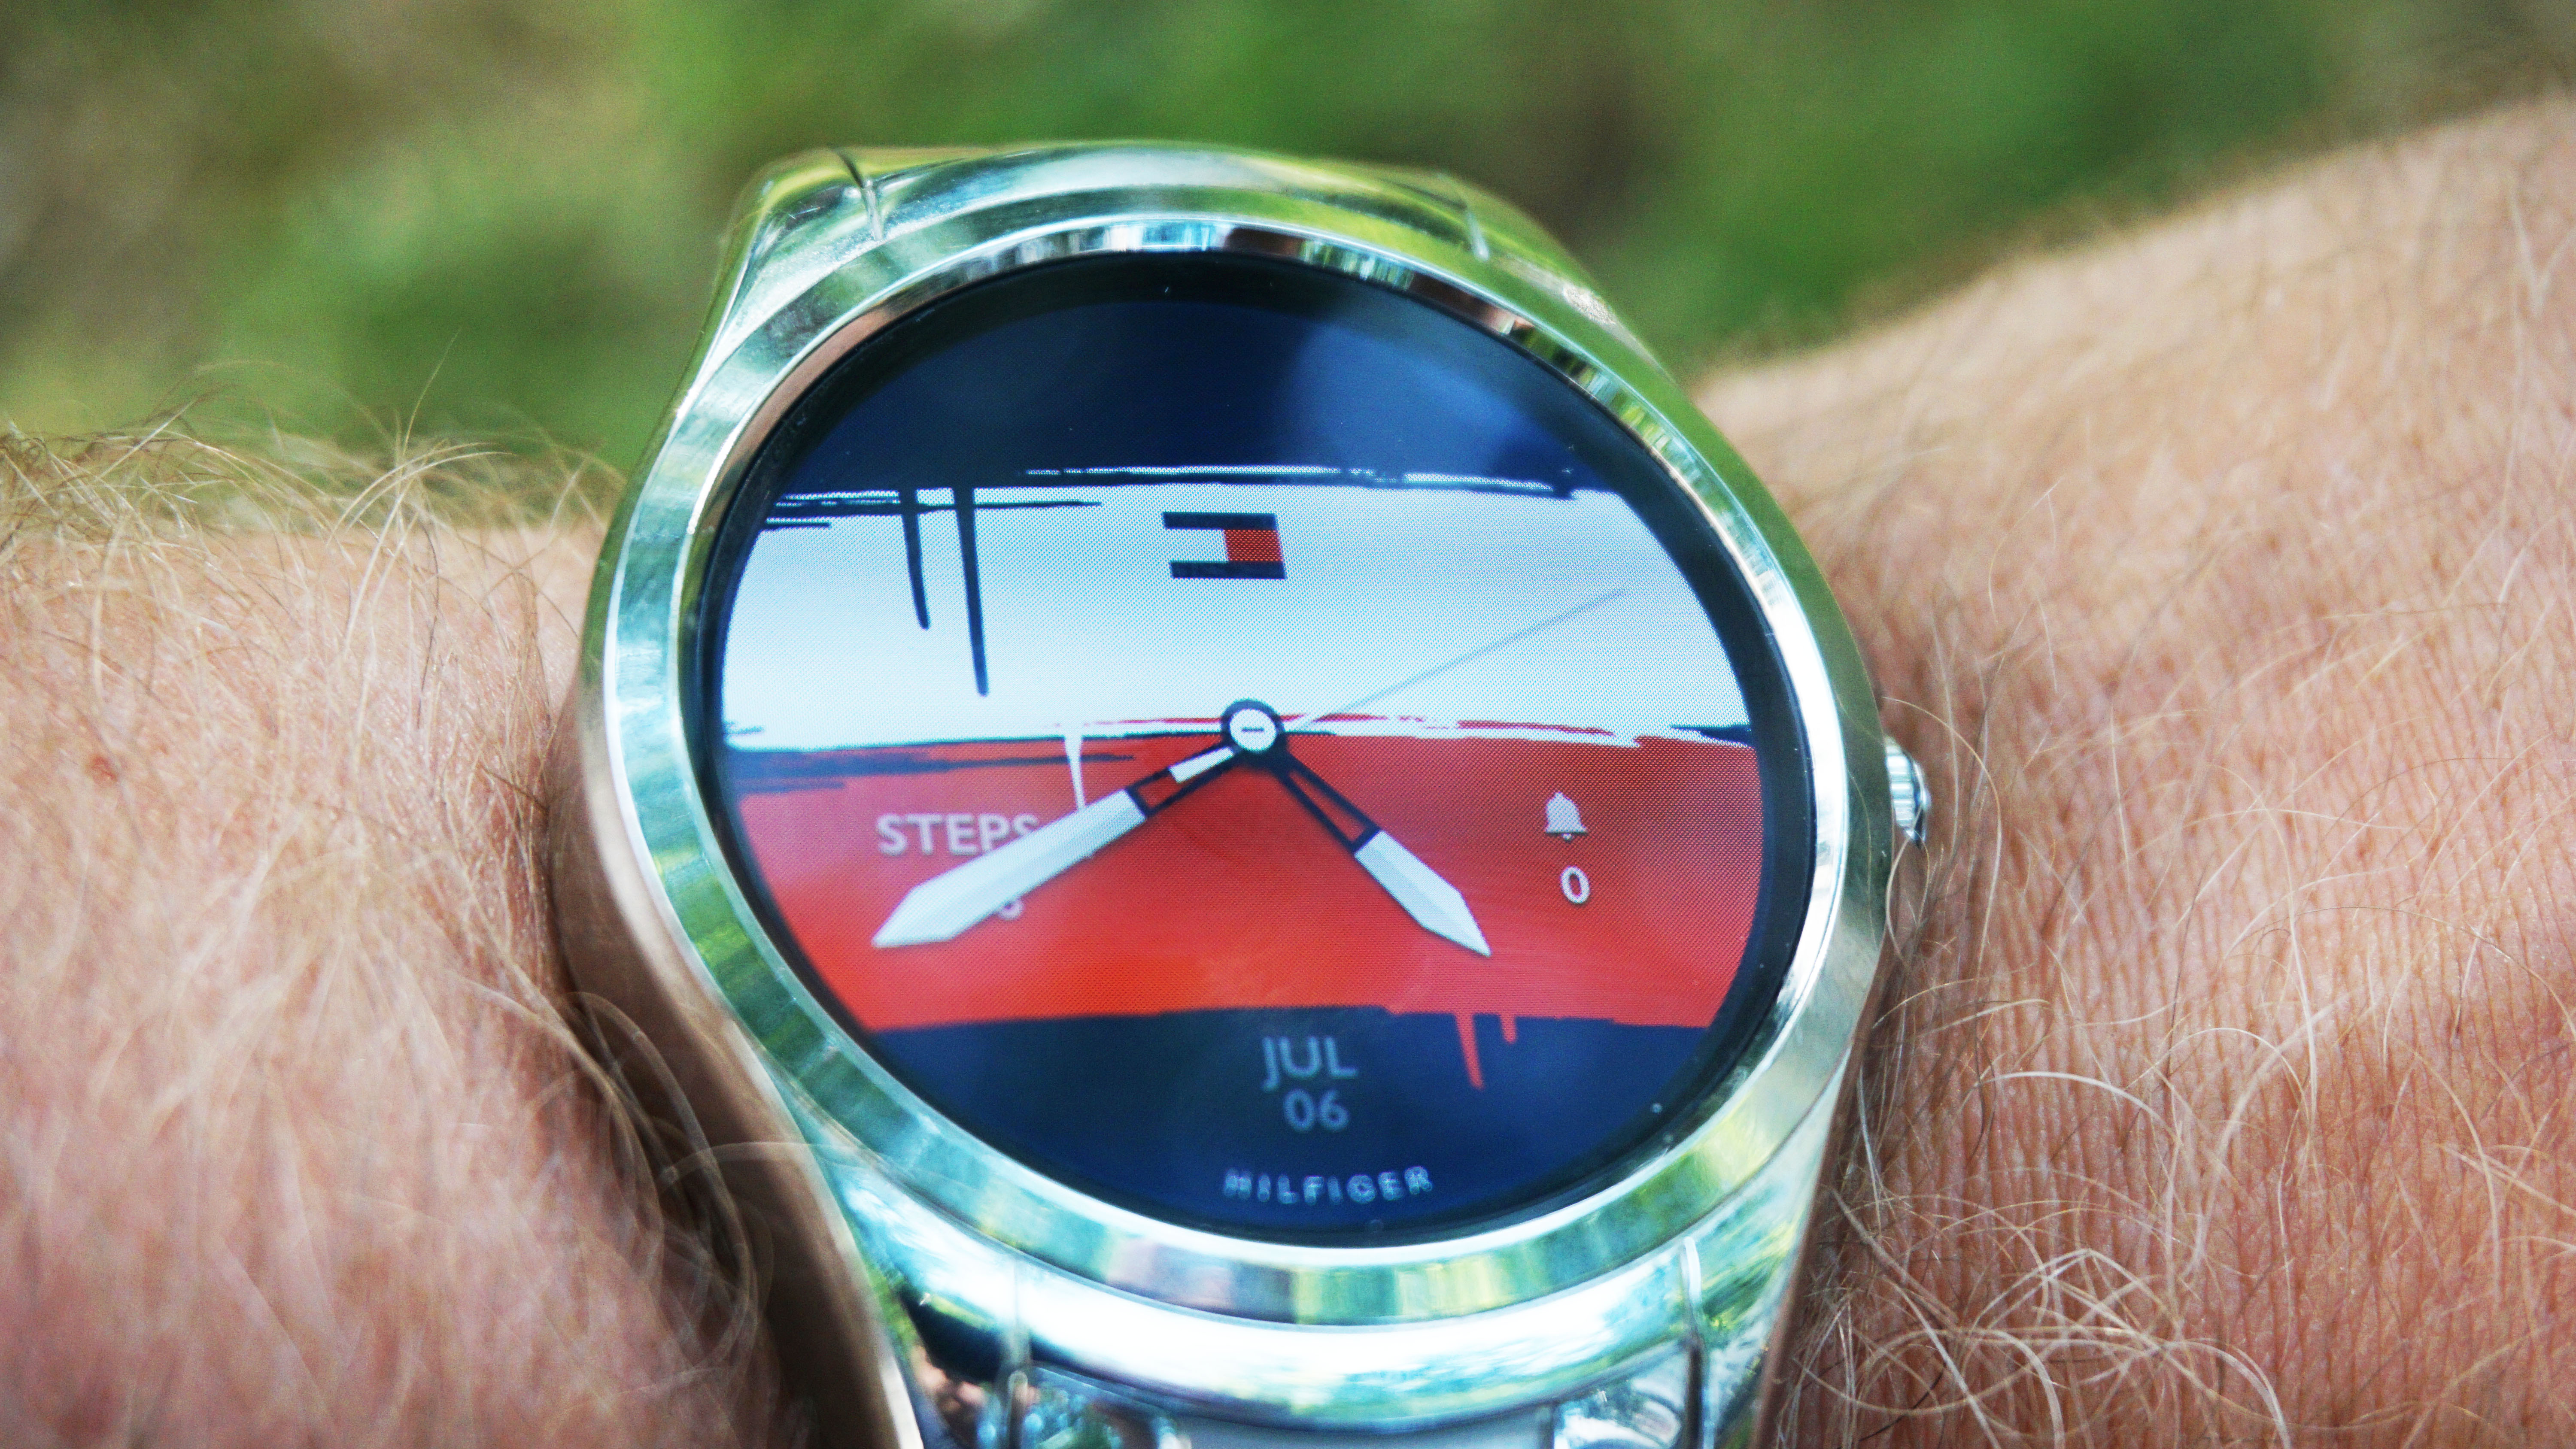 hilfiger smart watch